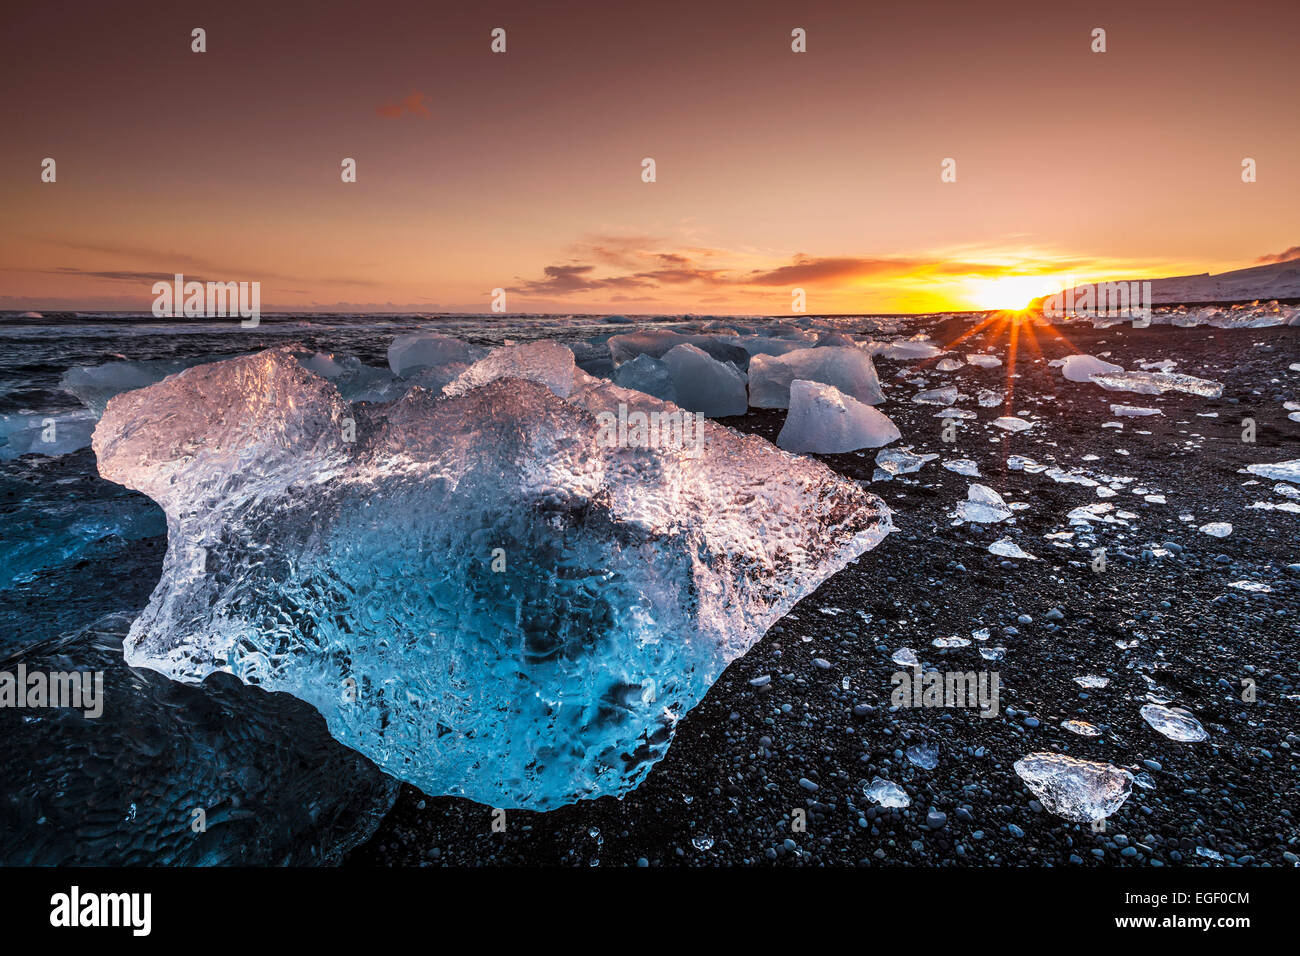 La glace brisée d'icebergs échoués sur la plage noire Jökulsárlón Jökulsárlón au coucher du soleil au sud est de l'Islande Banque D'Images